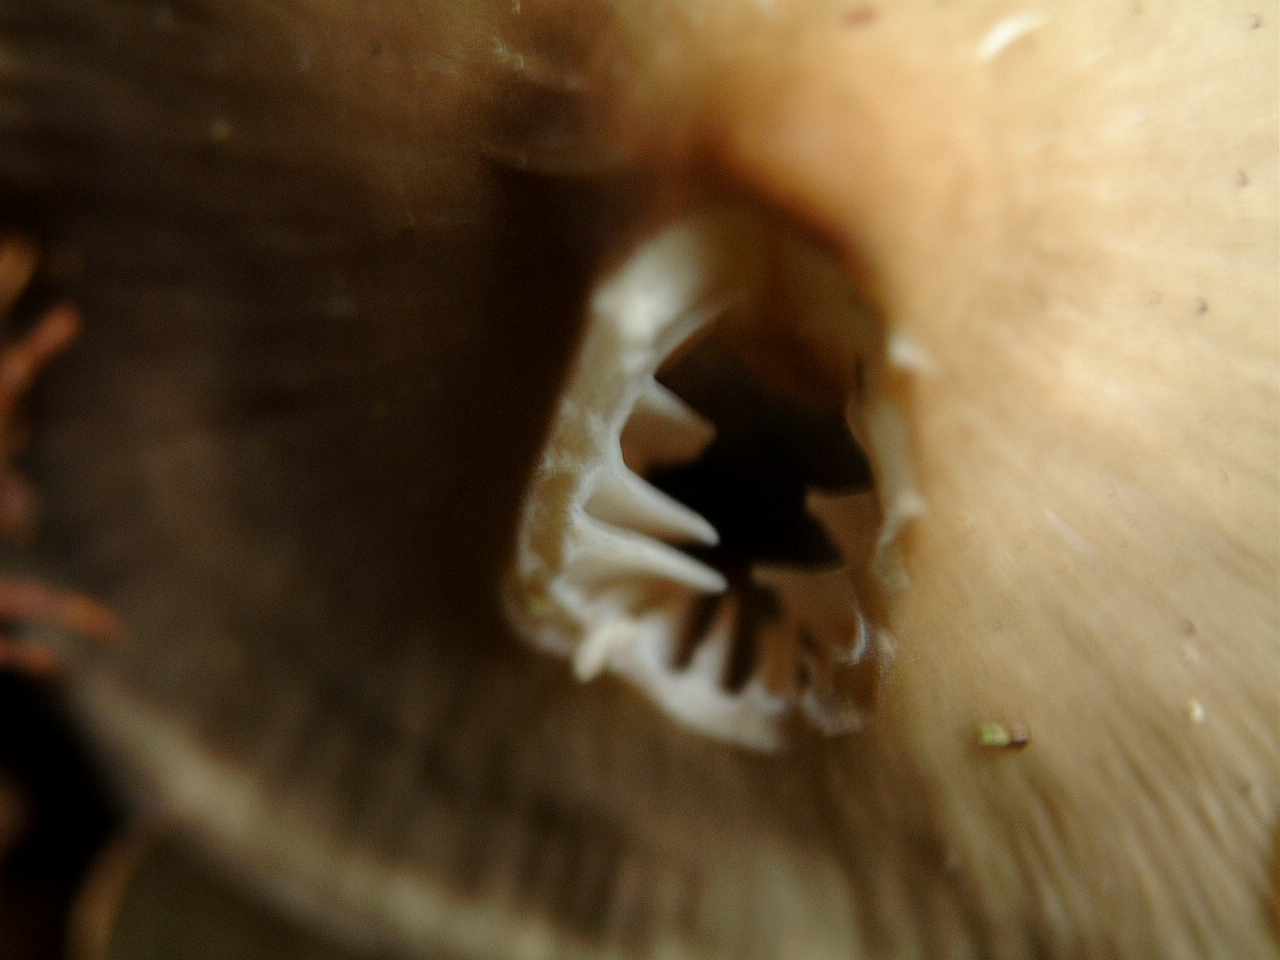 maartent underside of a toadstool mushroom teeth spore